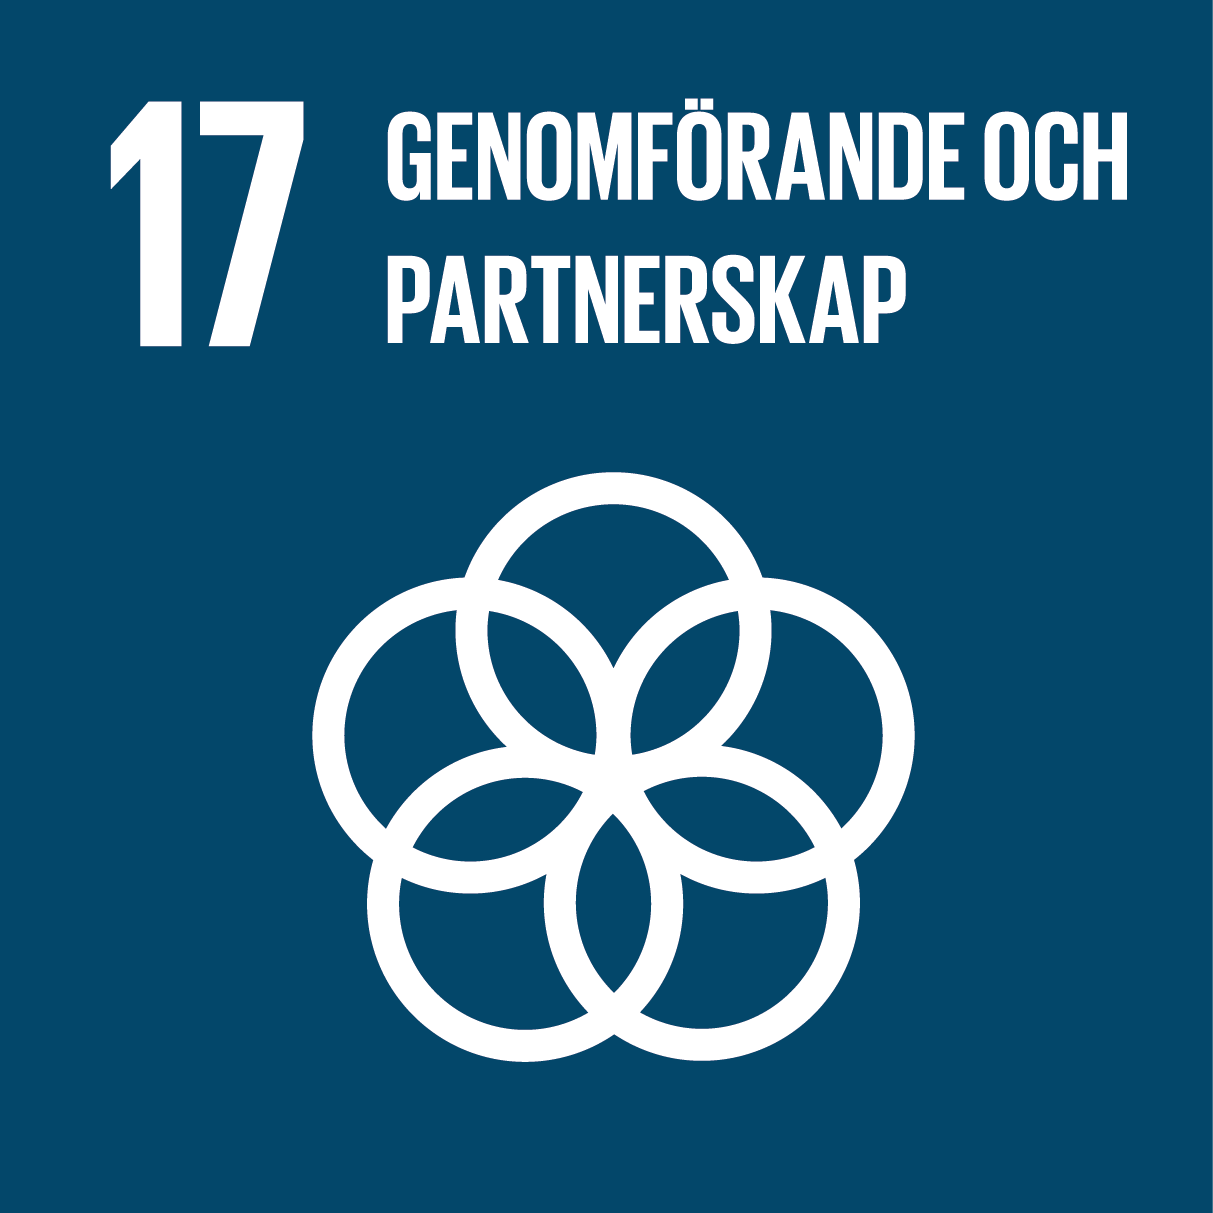 Globala målen - mål nummer 17: Genomförande och partnerskap